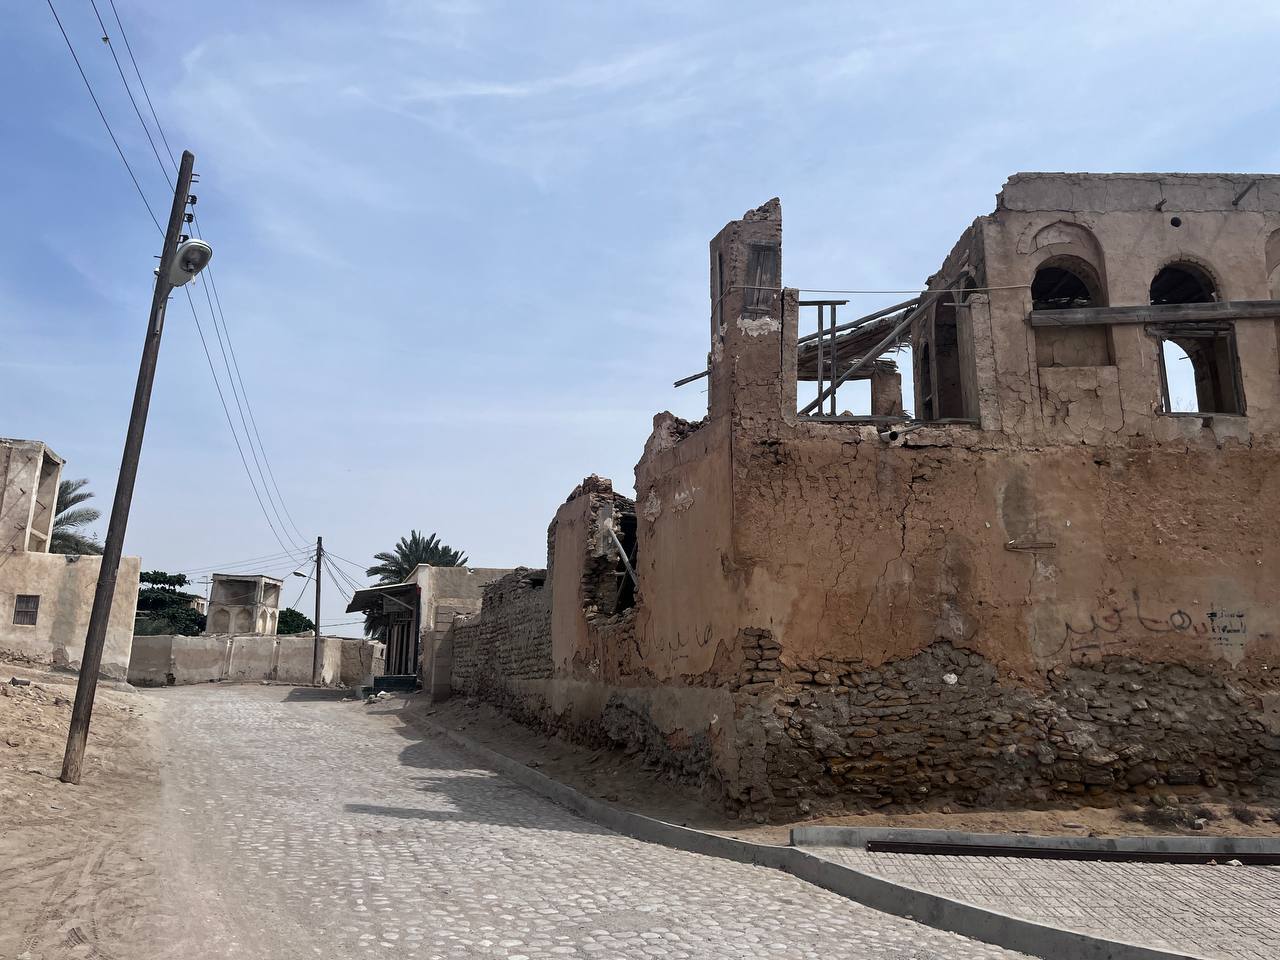 قلعه نادری قشم در معرض نابودی/ میراث فرهنگی و بی توجهی مسئولین!